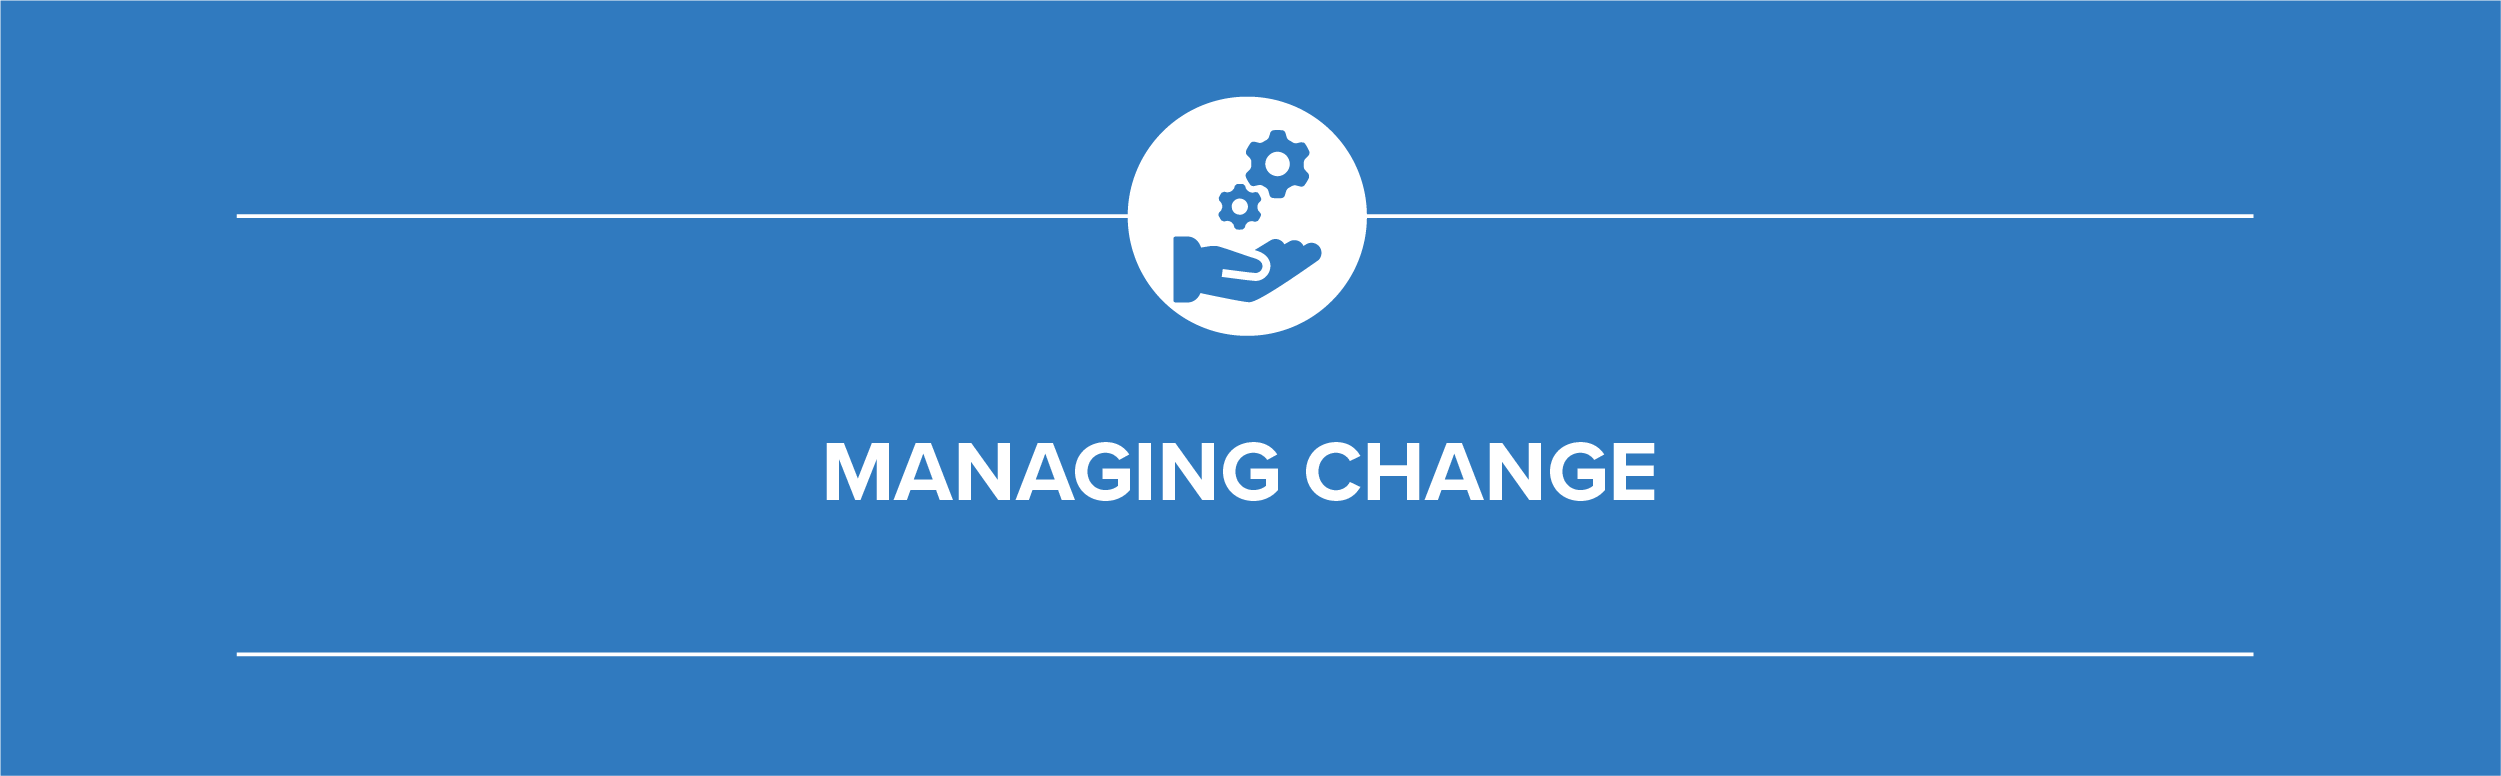 Blog_Managing_Change